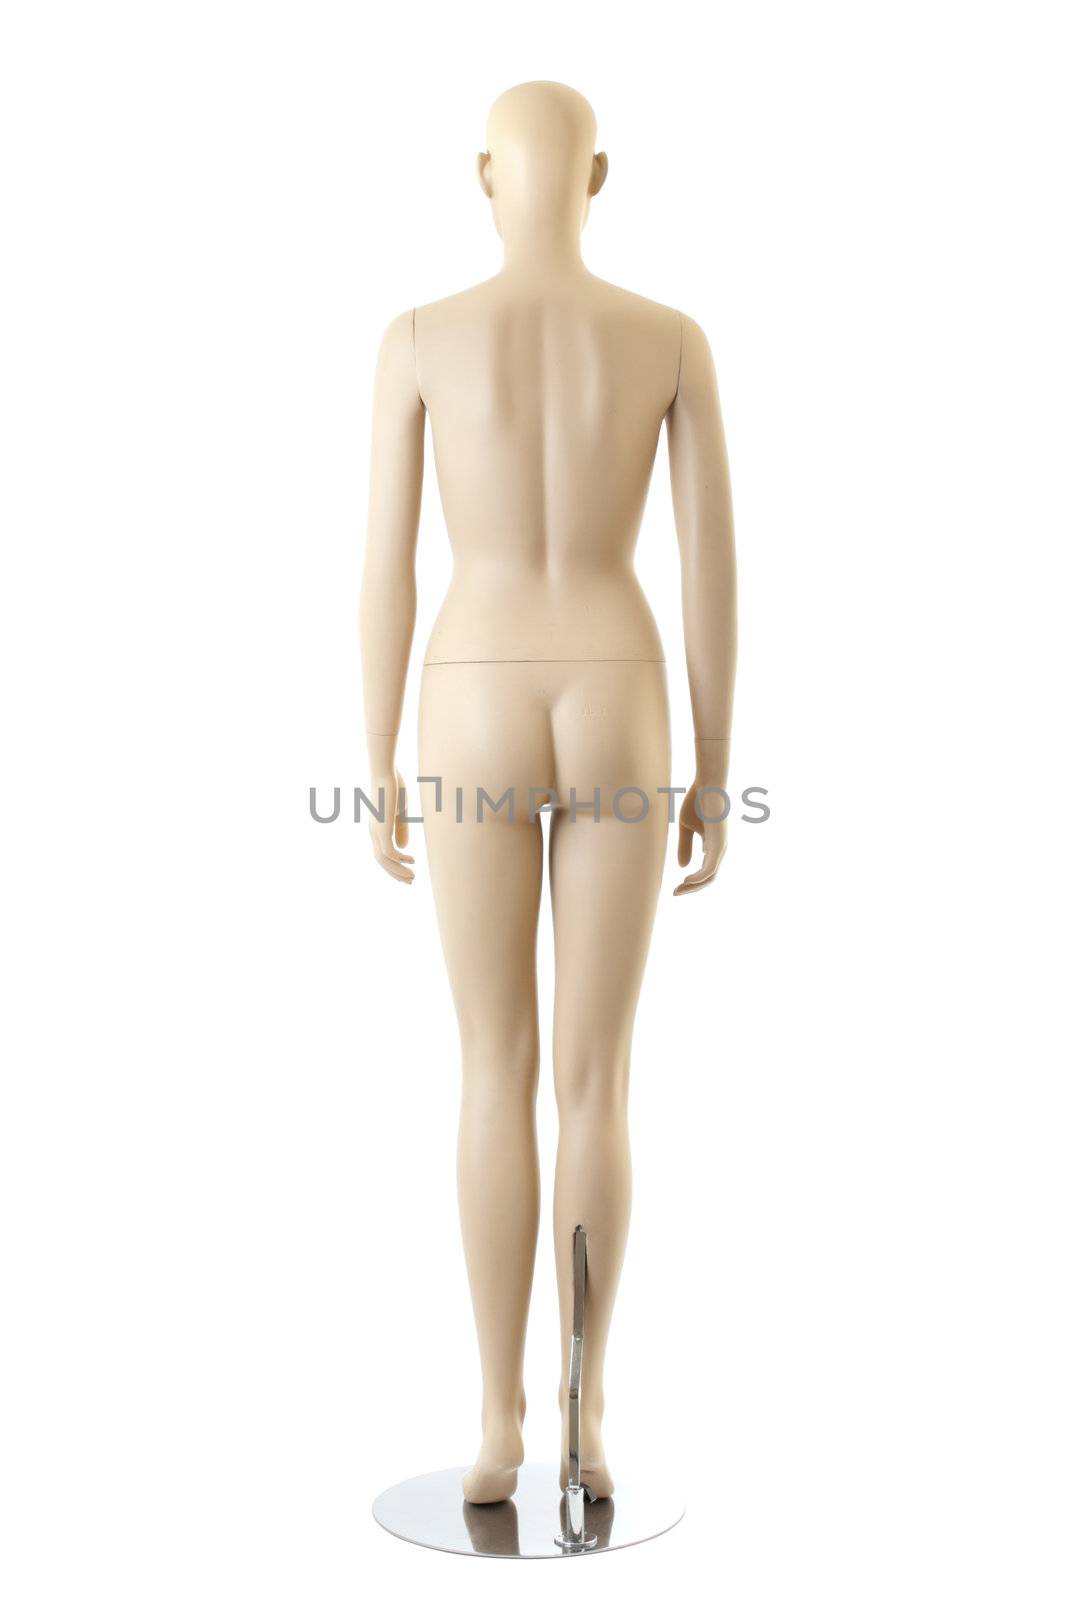 Naked anatomycal female mannequin. Isolated on white background